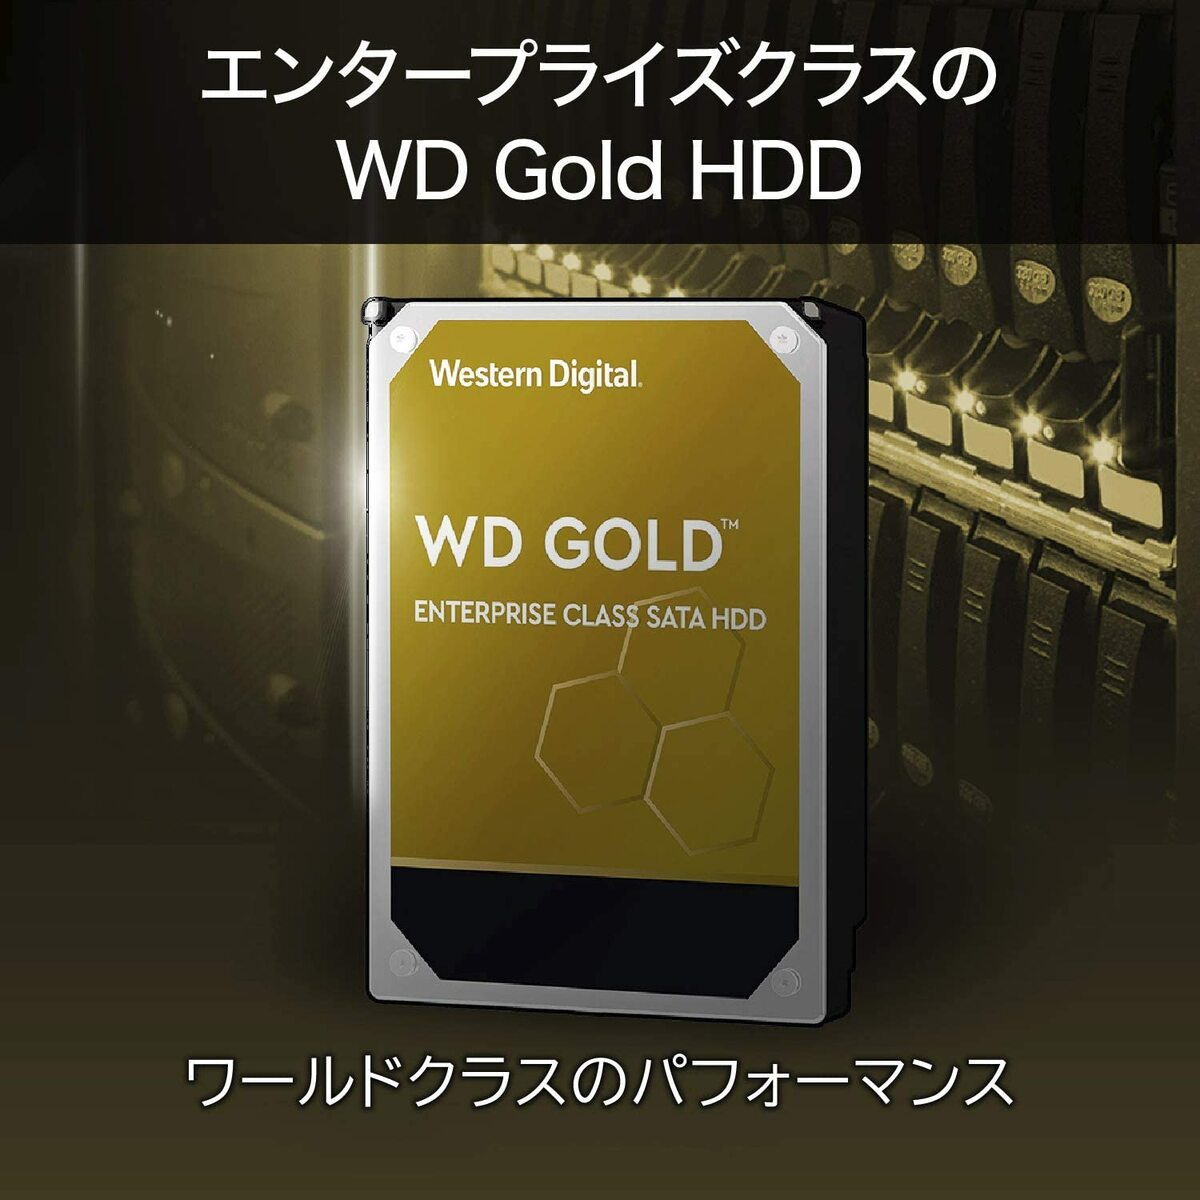 Western Digital (ウエスタンデジタル) 22TB WD Gold エンタープライズクラス SATA 内蔵ハードドライブ HDD  7,200 RPM SATA 6Gb/s 512 MBキャッシュ 3.5インチ